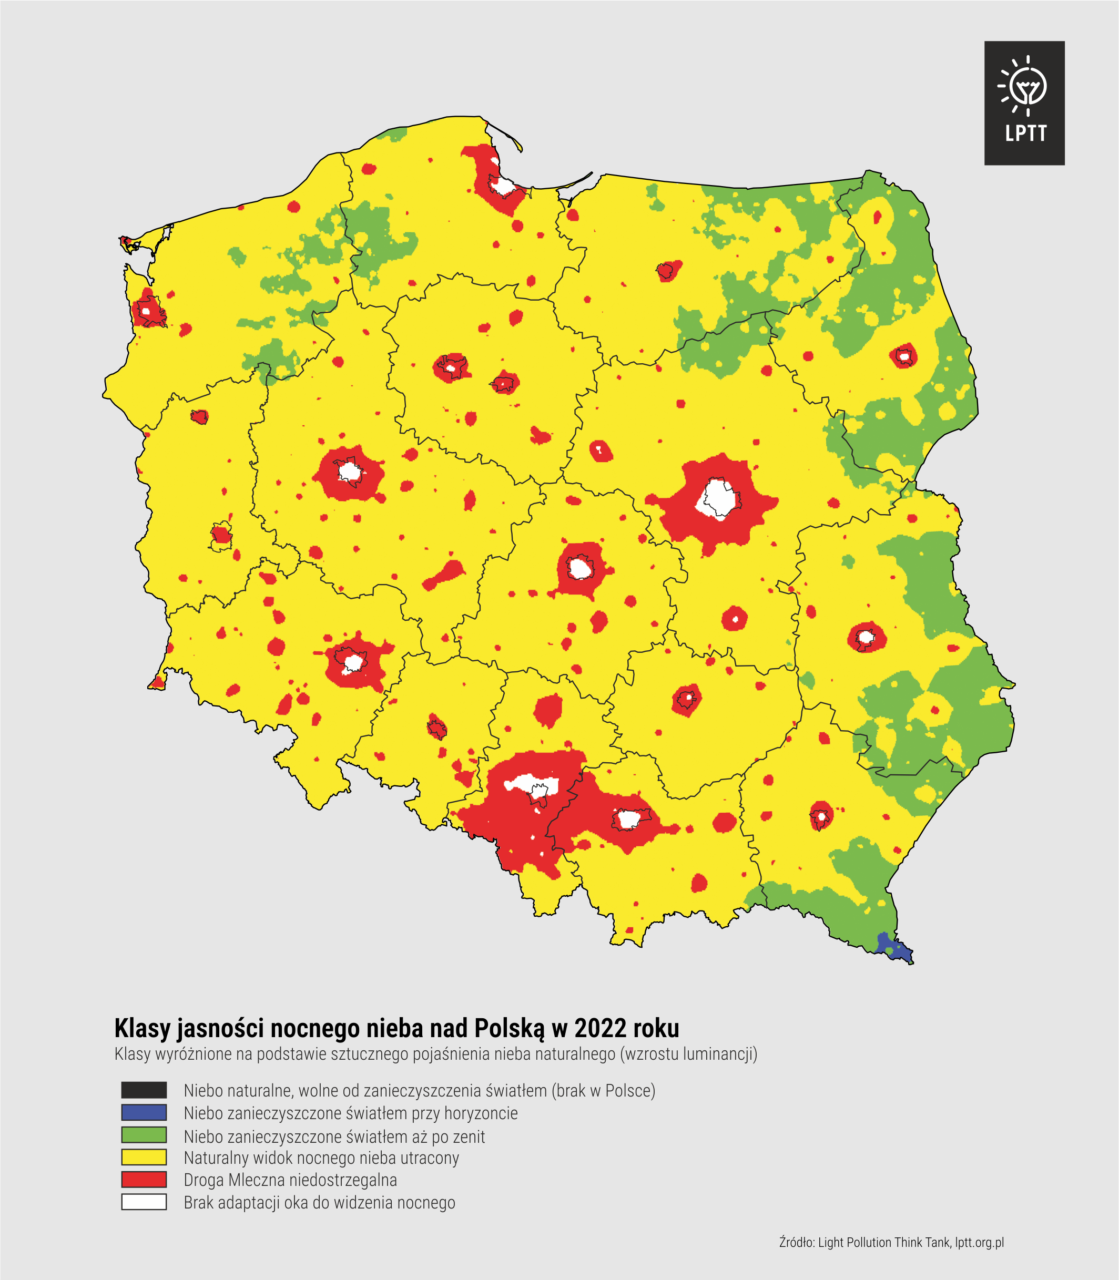 Mapa Polski prezentująca klasy jasności prezentujące nocne niebo w 2022 roku z zaznaczonymi różnymi stopniami zanieczyszczenia świetlnego, od naturalnego nieba po obszary, gdzie niebo nocne jest całkowicie utracone.